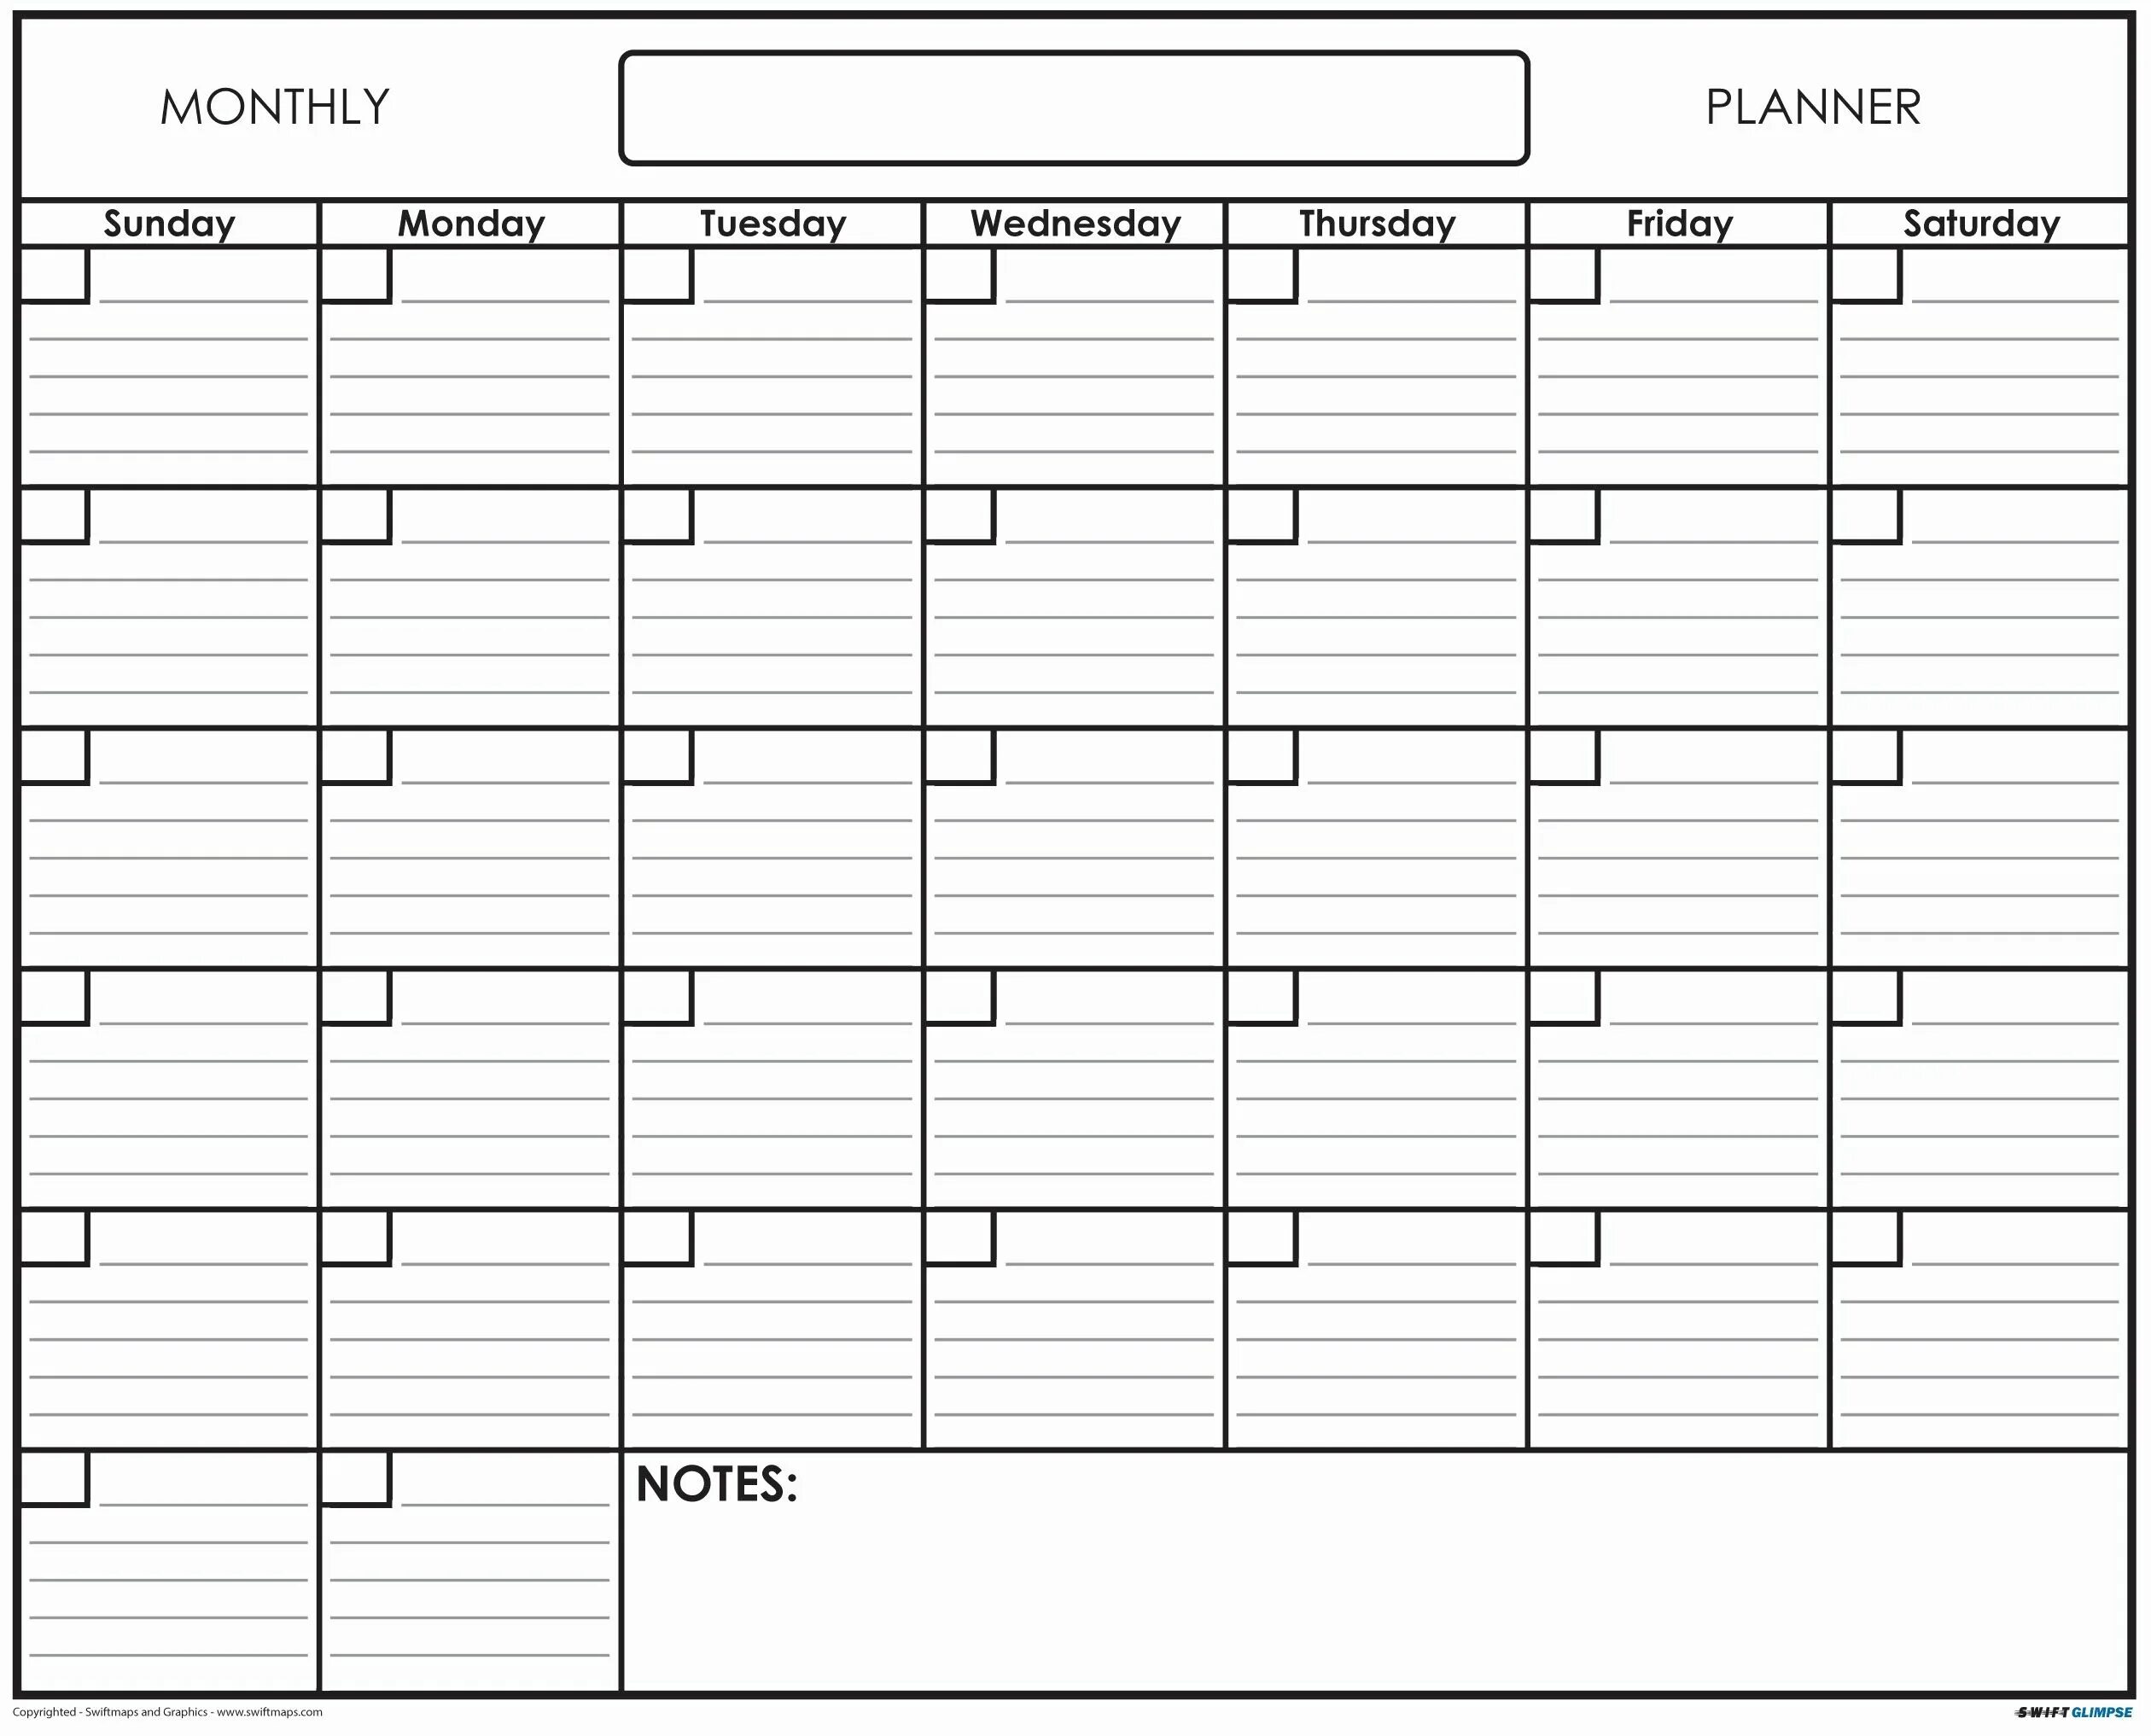 Ежедневный календарь на год. Планировщик на месяц. Календарь план. Планинг на месяц. Планирование на месяц.